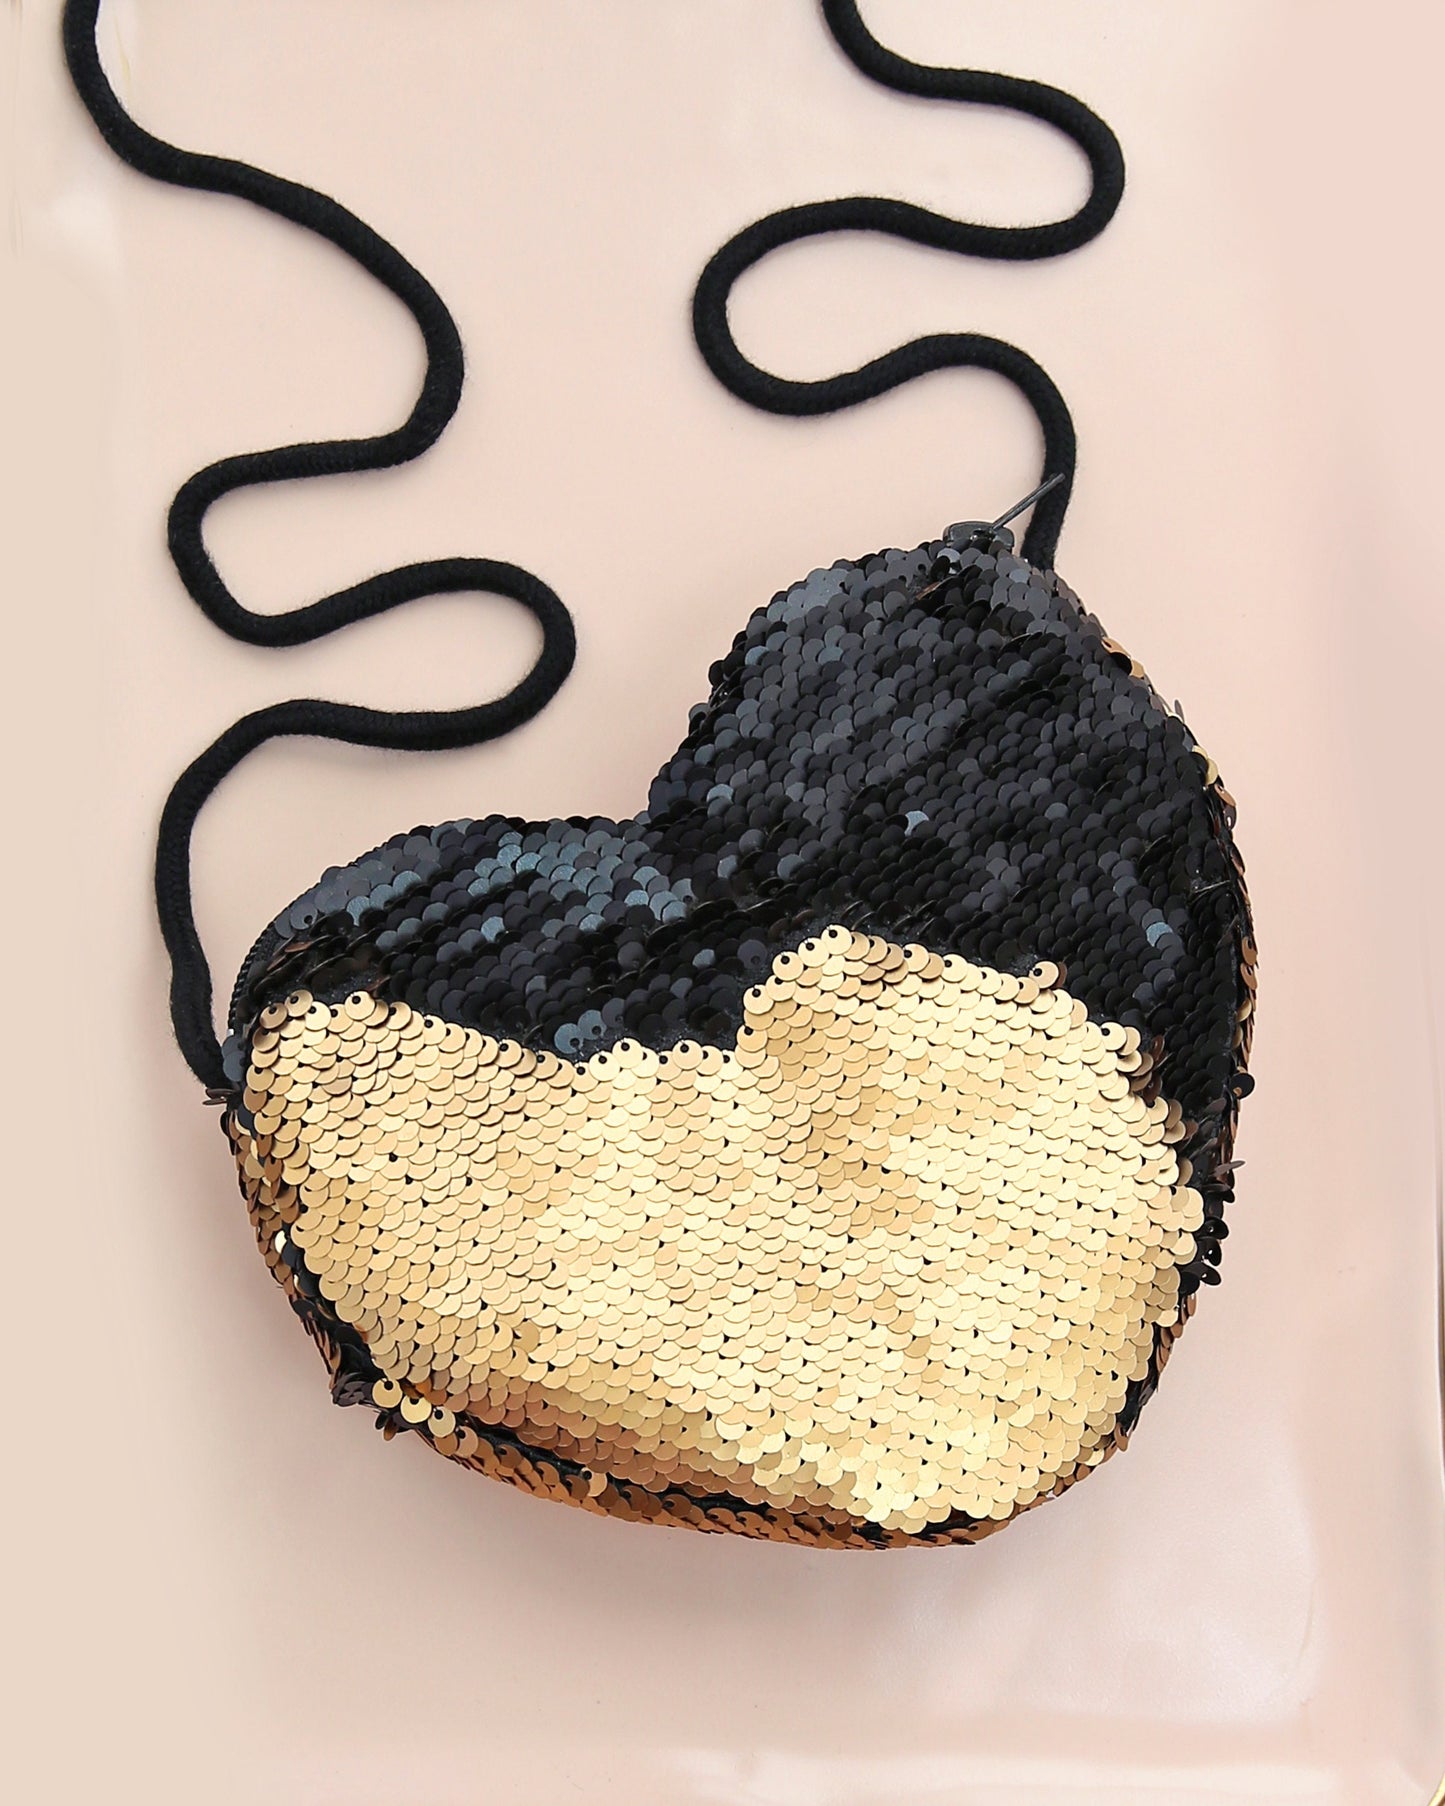 Heart Sequin Purse - Flip Sequin Heart Bag - Girls Heart Purse - Black and Gold Heart Bag